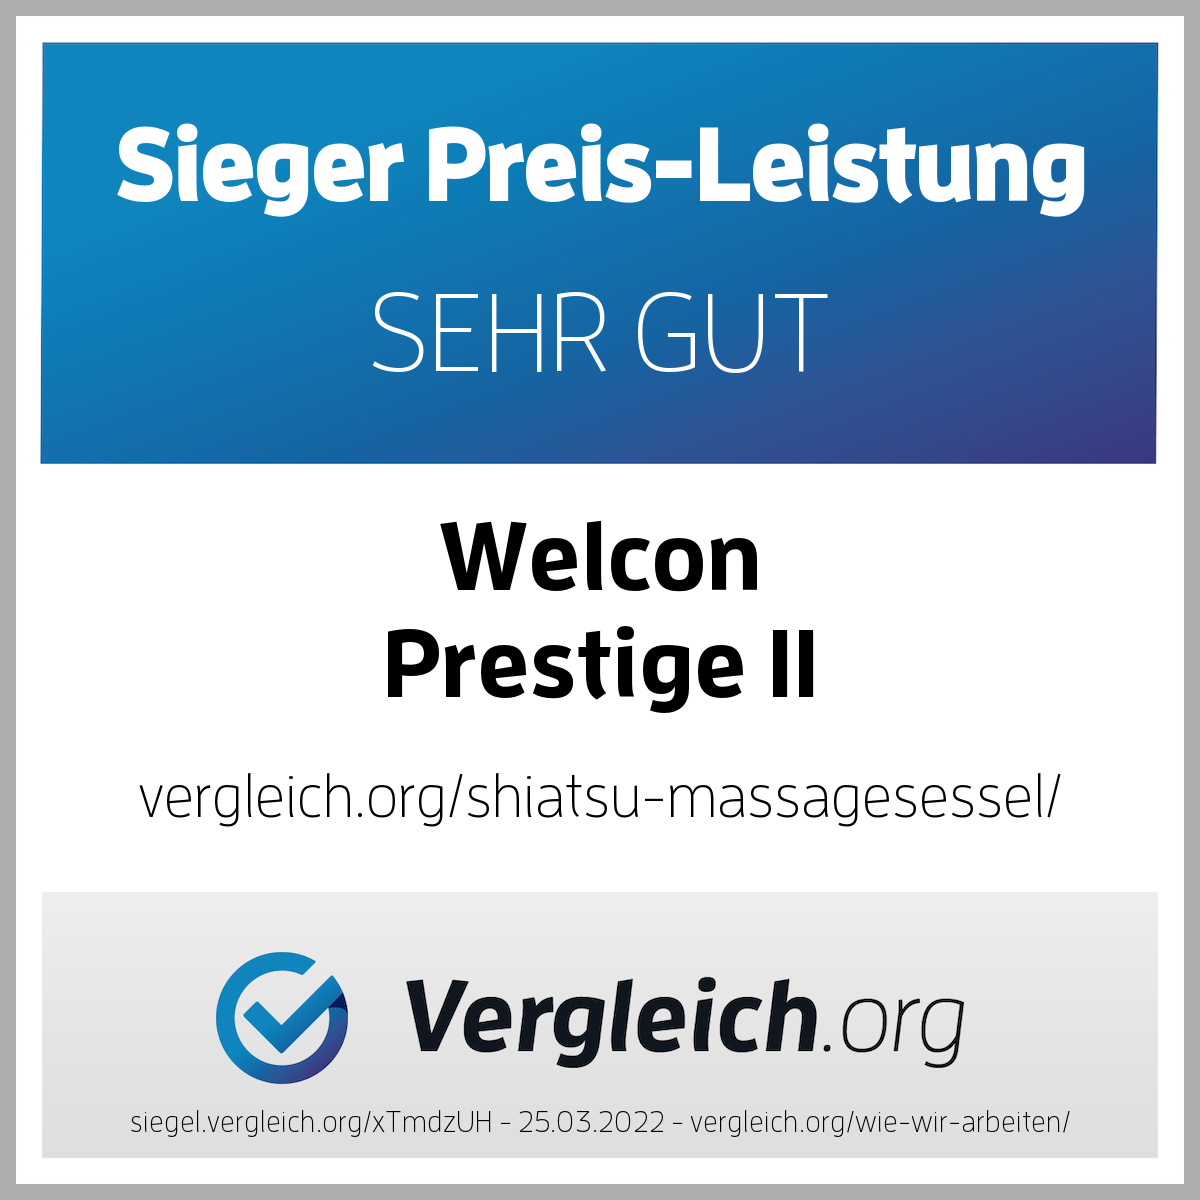 Massagesessel WELCON Prestige II BLACK EDITION in schwarz - Sale